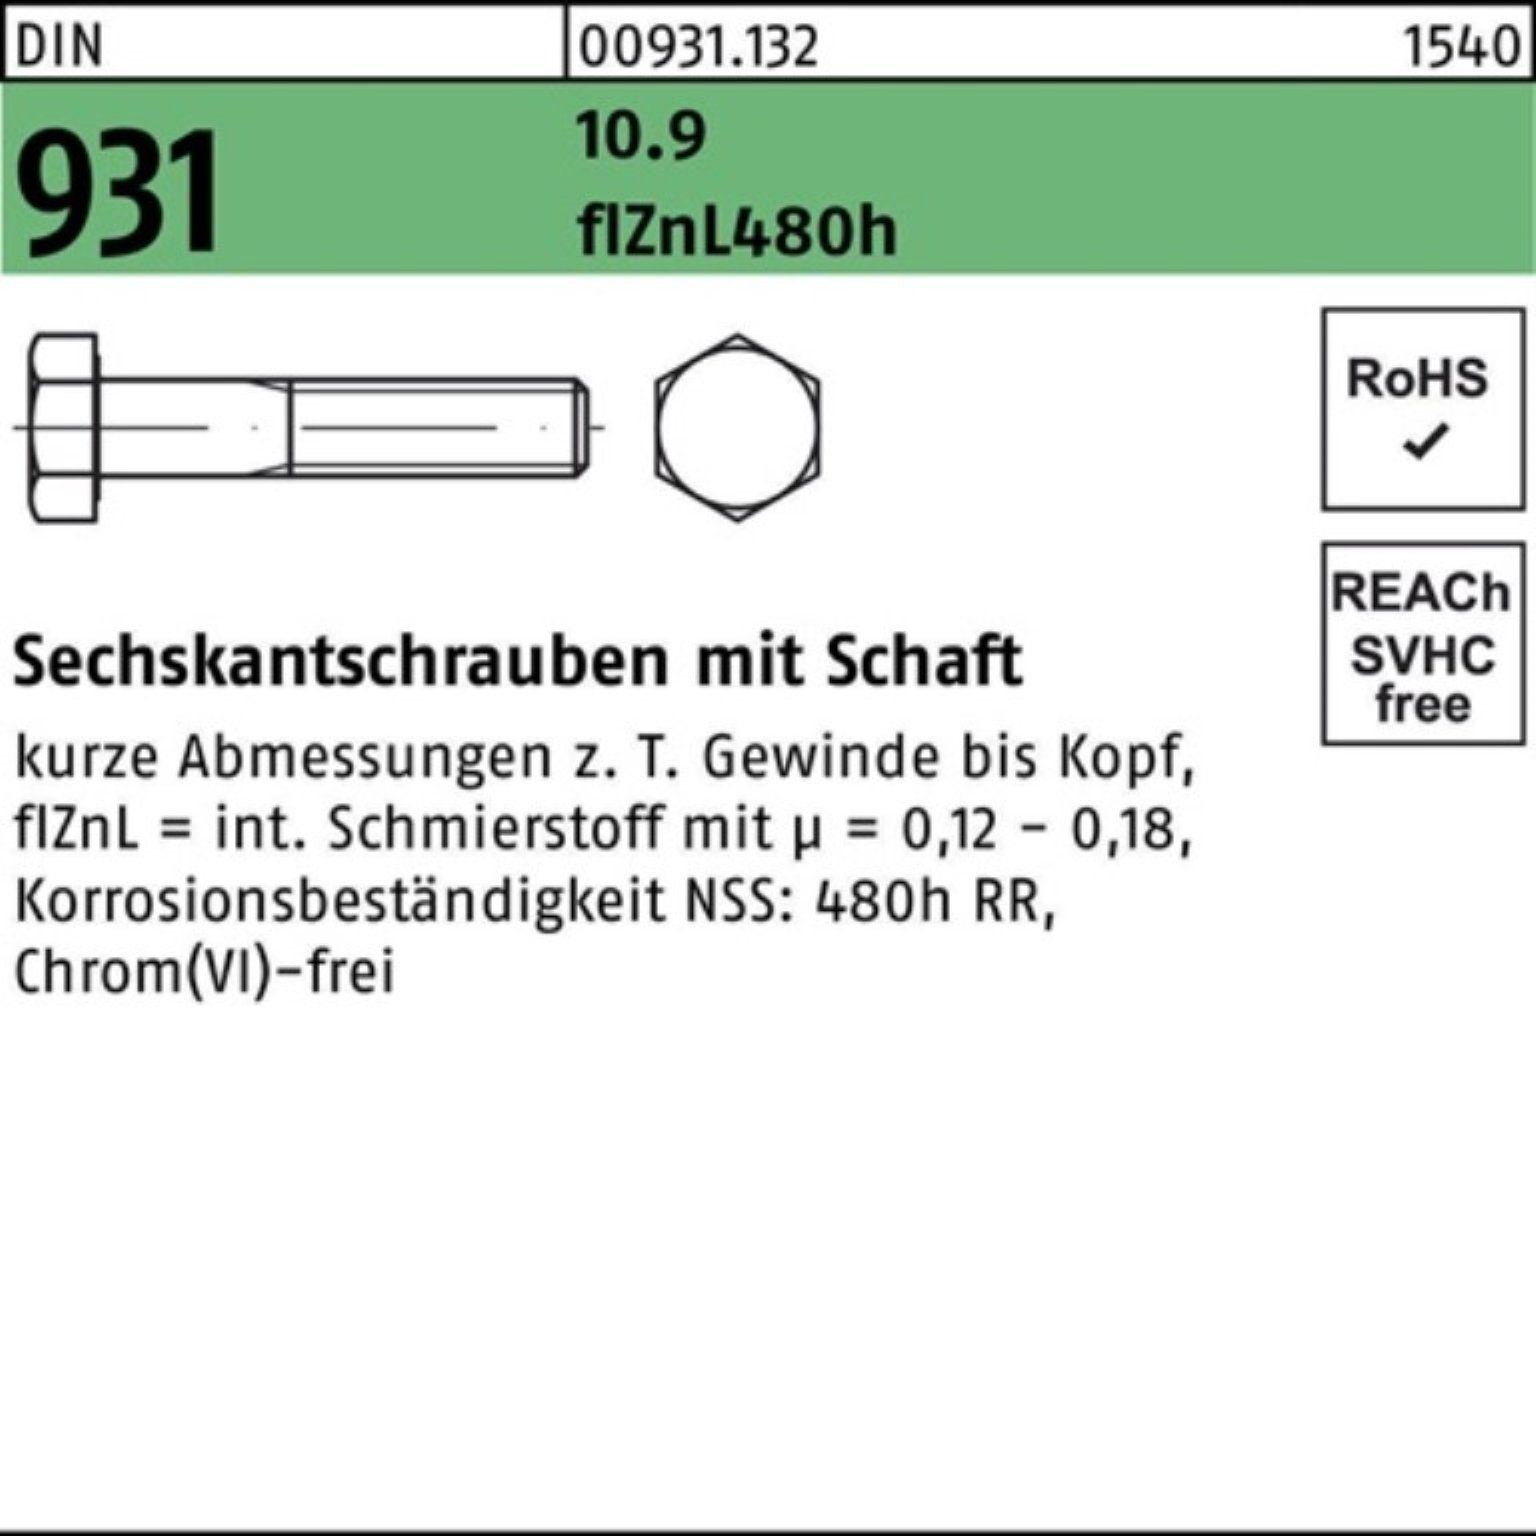 M16x DIN Sechskantschraube 931 Schaft 65 Sechskantschraube Pack flZnL/nc/x/x Reyher 100er 10.9